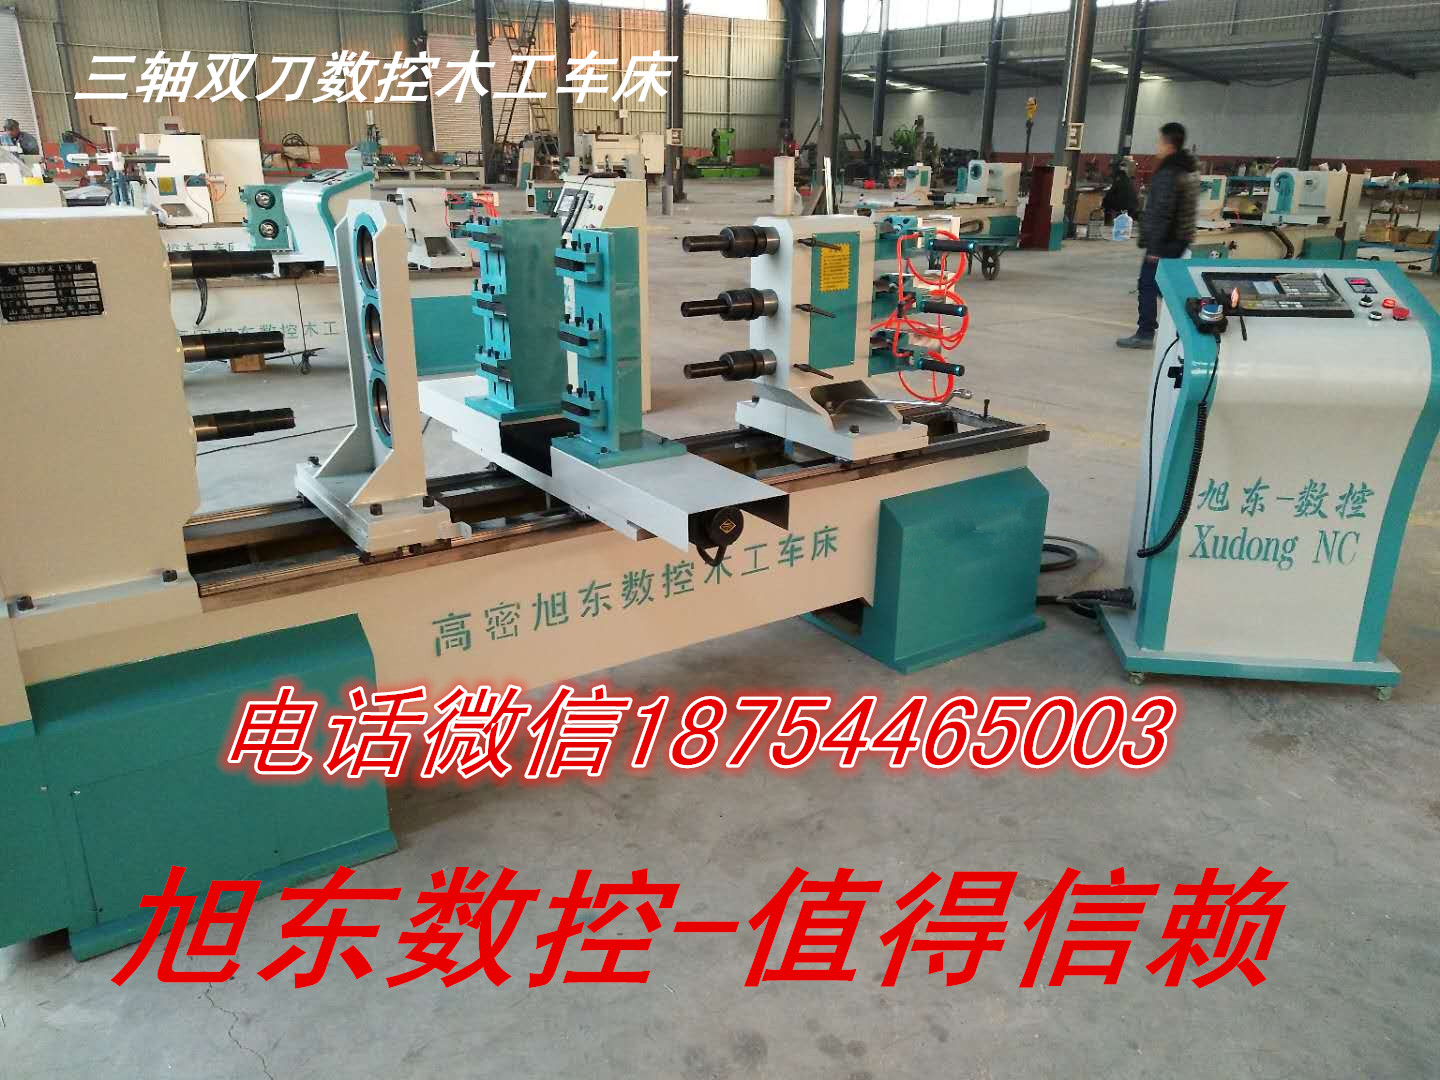 潍坊市数控木工车床厂家 全自动木工车床厂家